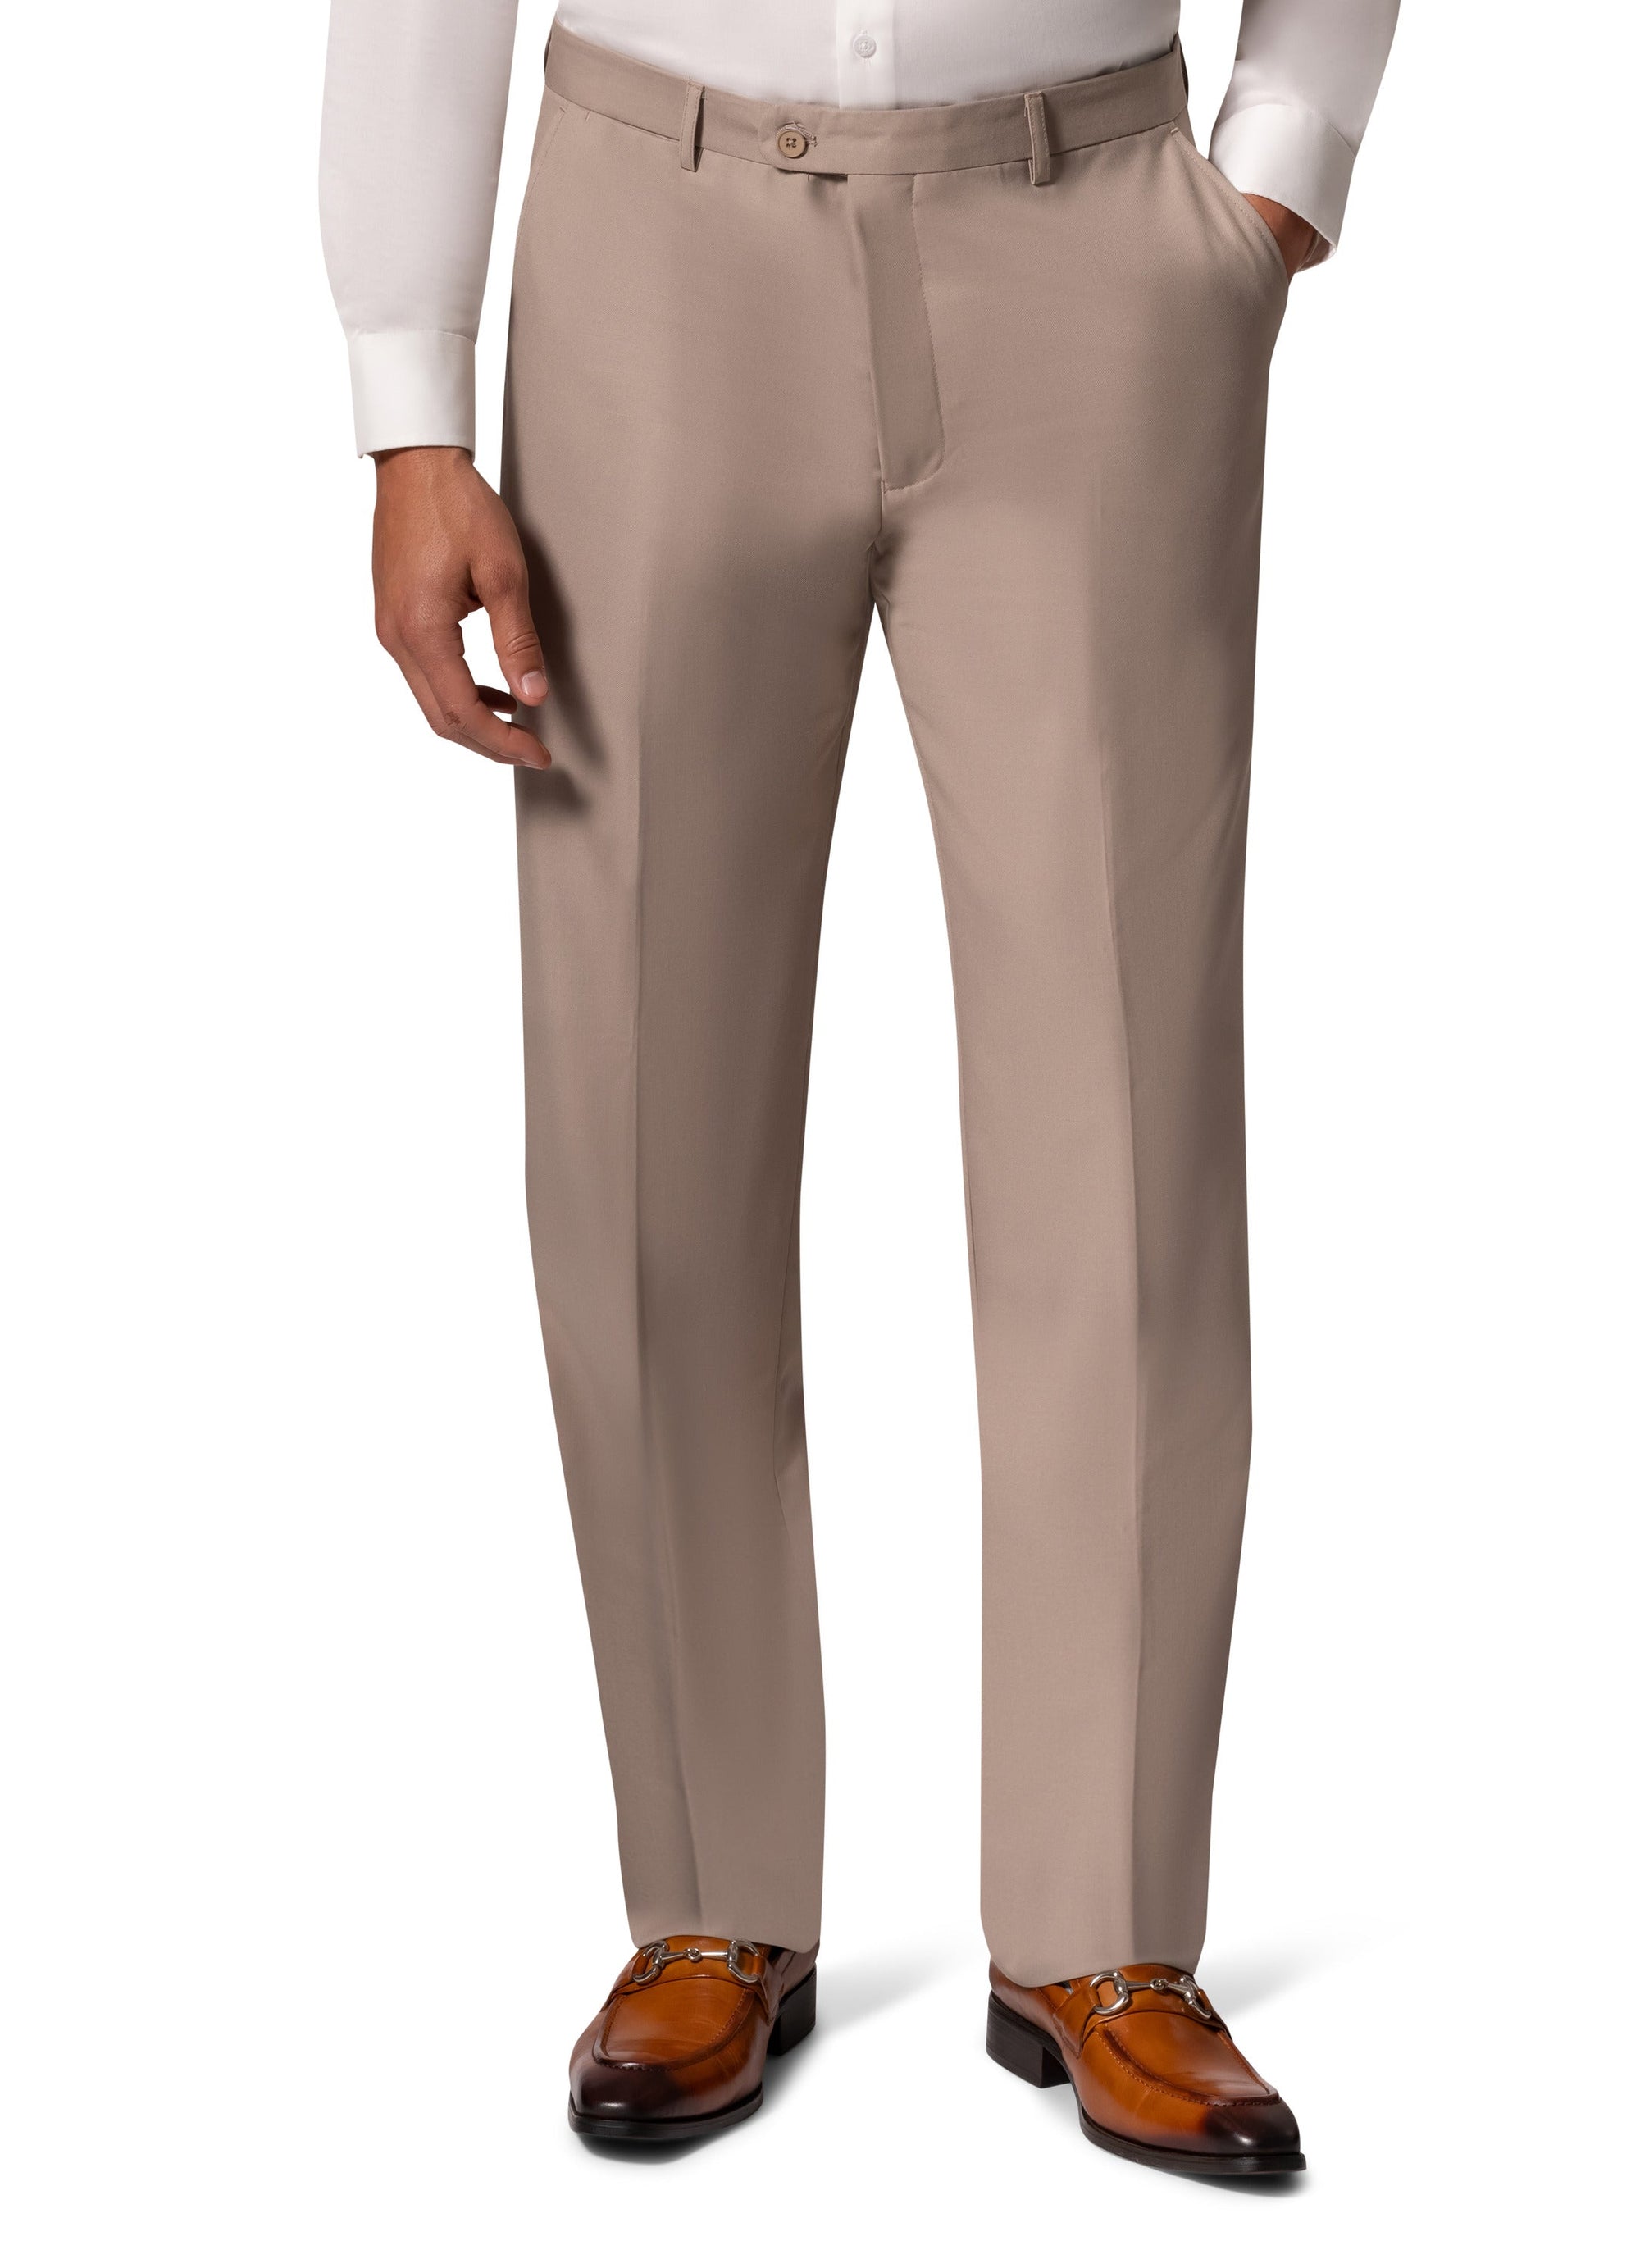 Berragamo A6732 D/B Modern Fit Suit - Tan